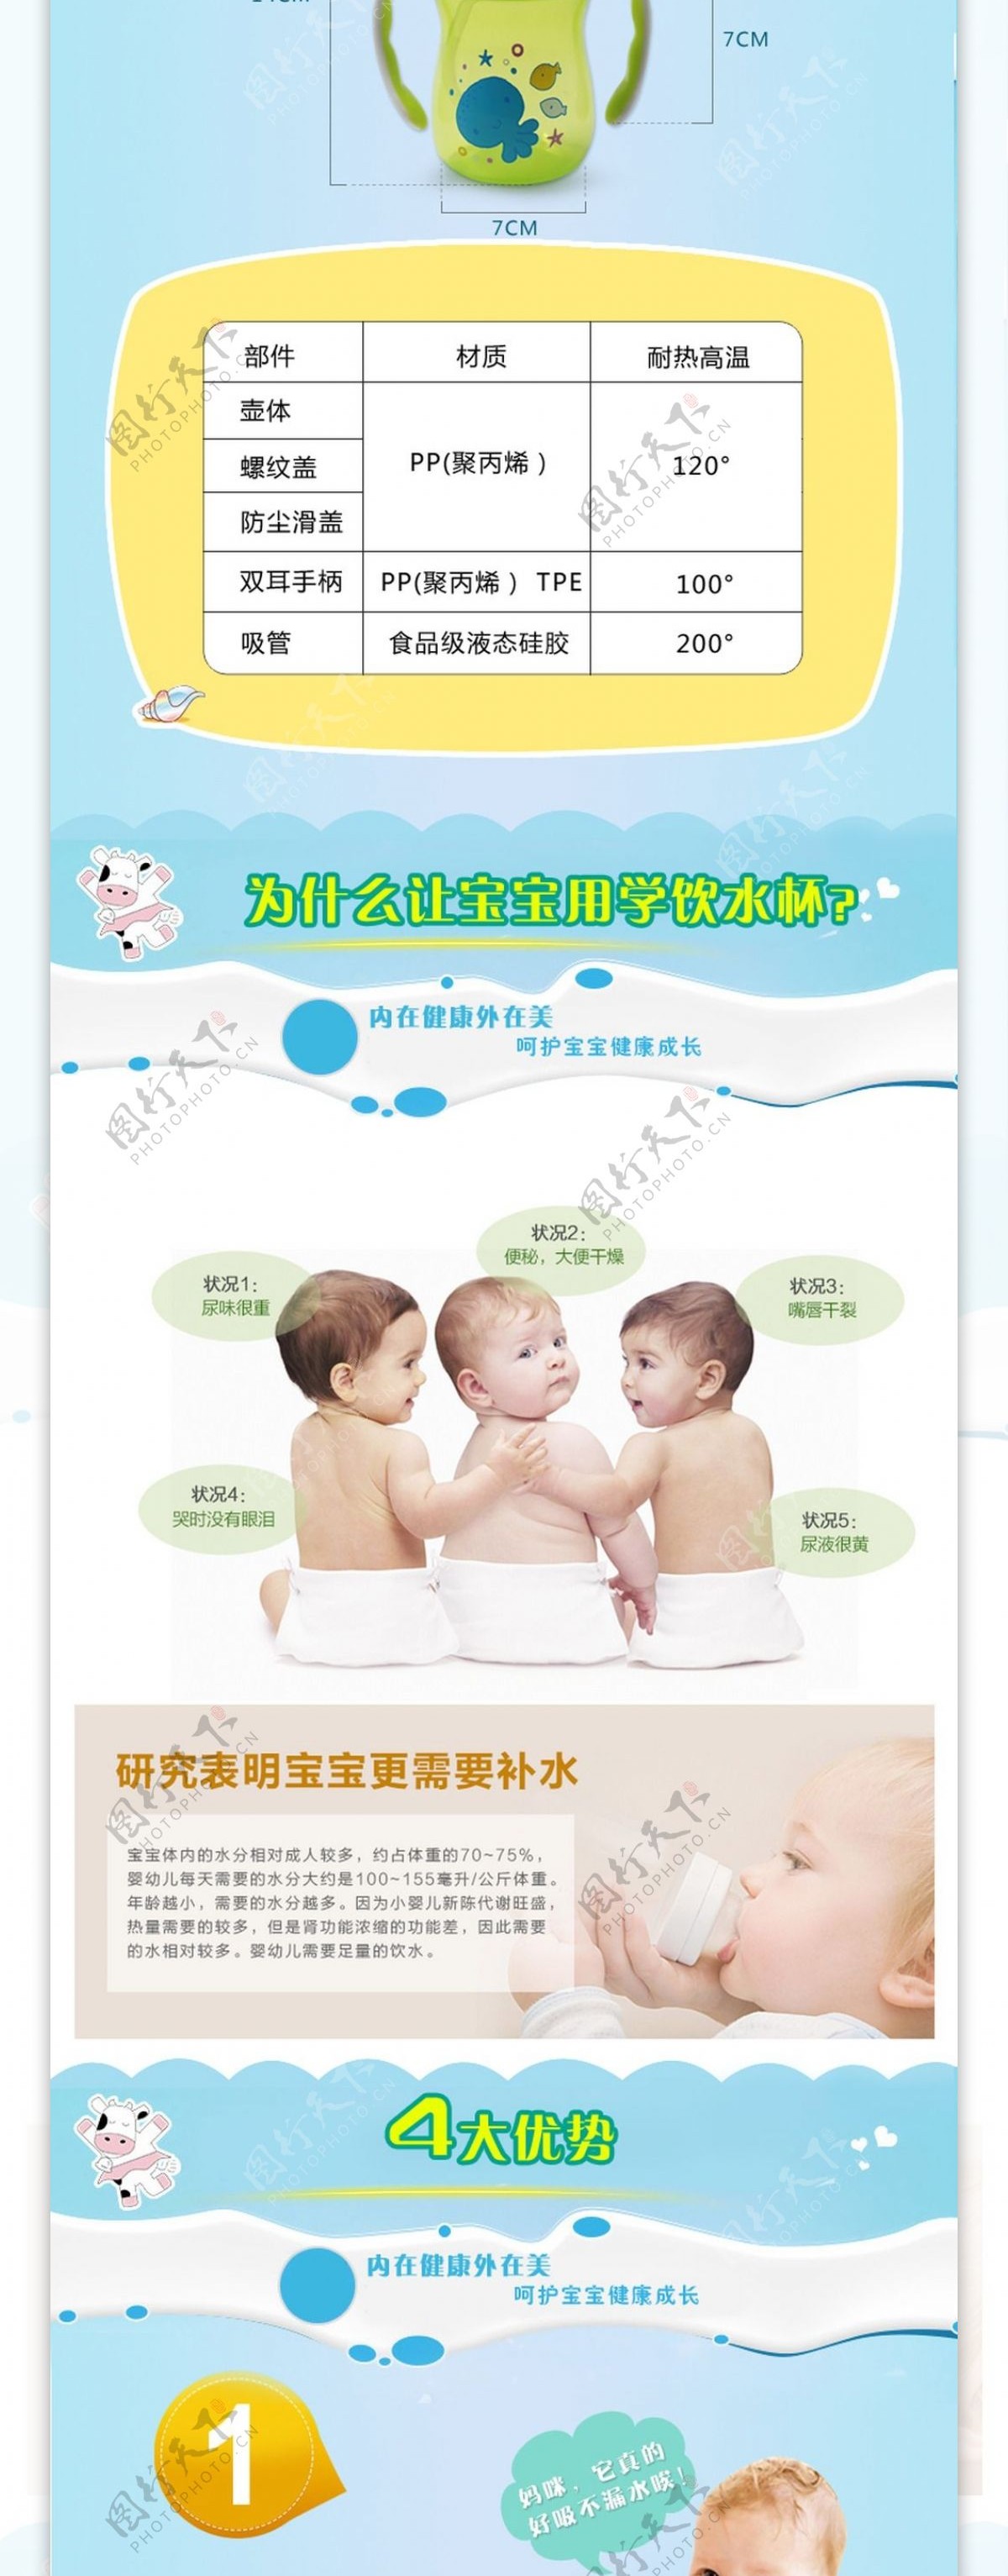 婴儿水壶详情页设计灵感设计